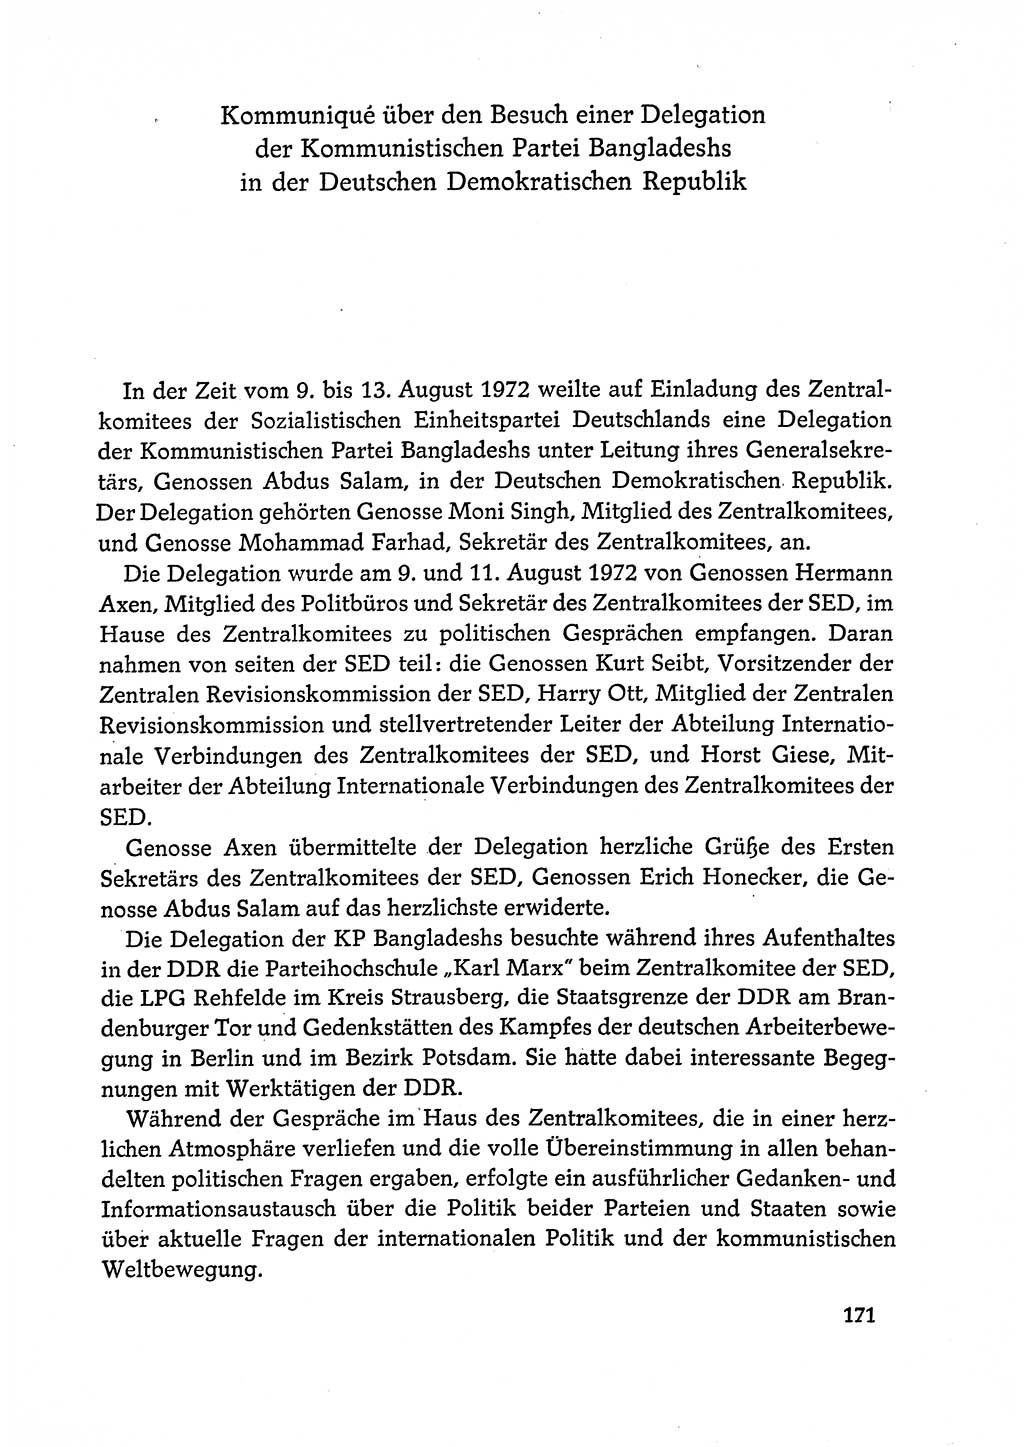 Dokumente der Sozialistischen Einheitspartei Deutschlands (SED) [Deutsche Demokratische Republik (DDR)] 1972-1973, Seite 171 (Dok. SED DDR 1972-1973, S. 171)